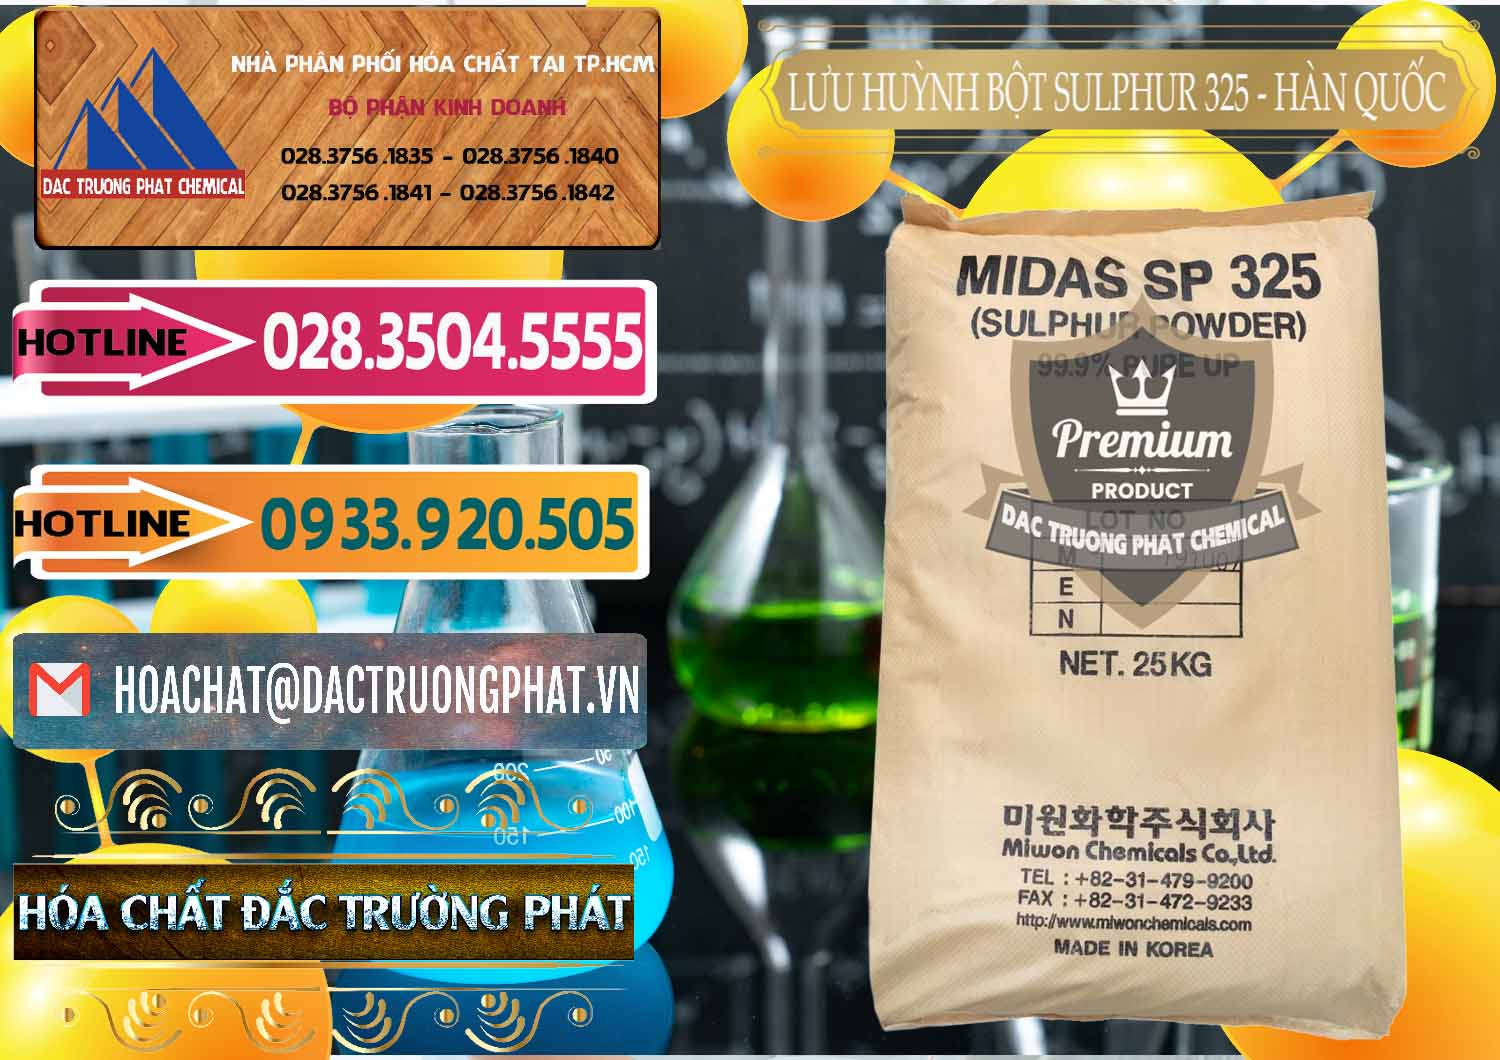 Chuyên bán - phân phối Lưu huỳnh Bột - Sulfur Powder Midas SP 325 Hàn Quốc Korea - 0198 - Nhà phân phối ( cung ứng ) hóa chất tại TP.HCM - dactruongphat.vn